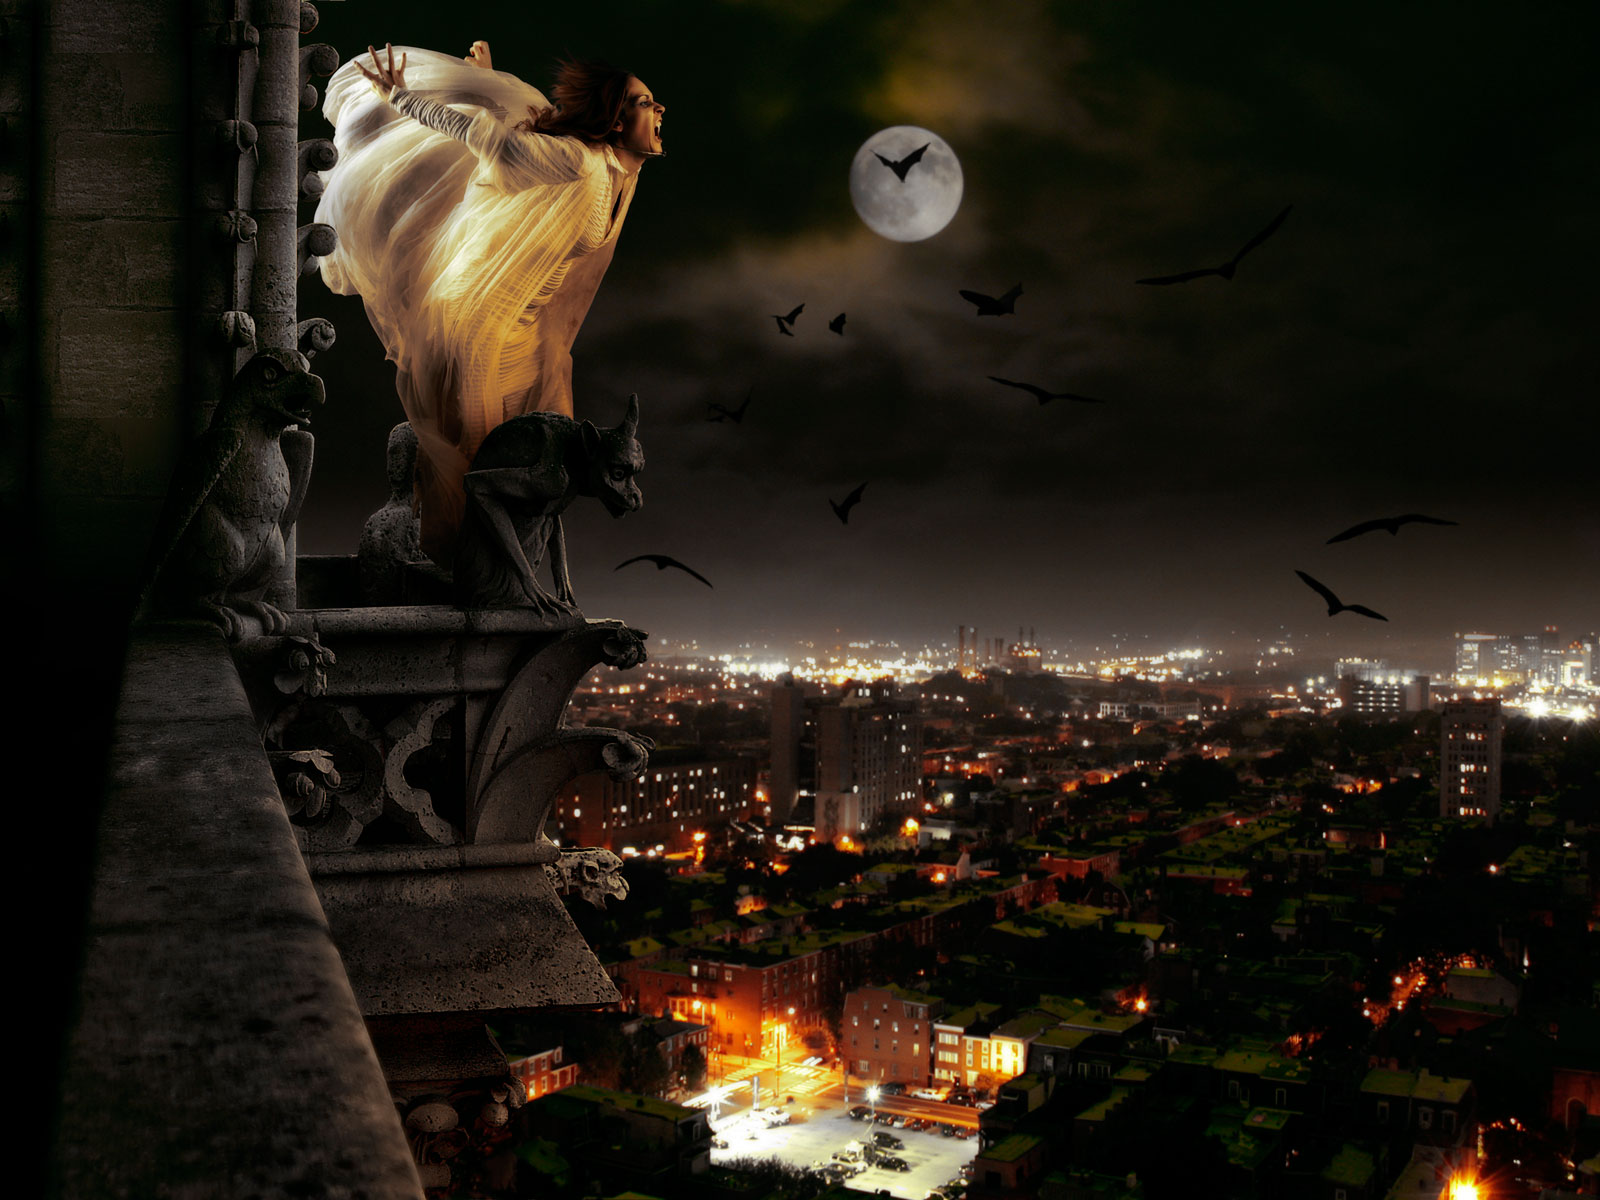 Dark Horror Gothic Vampire Women Evil Cities Night Halloween Cg